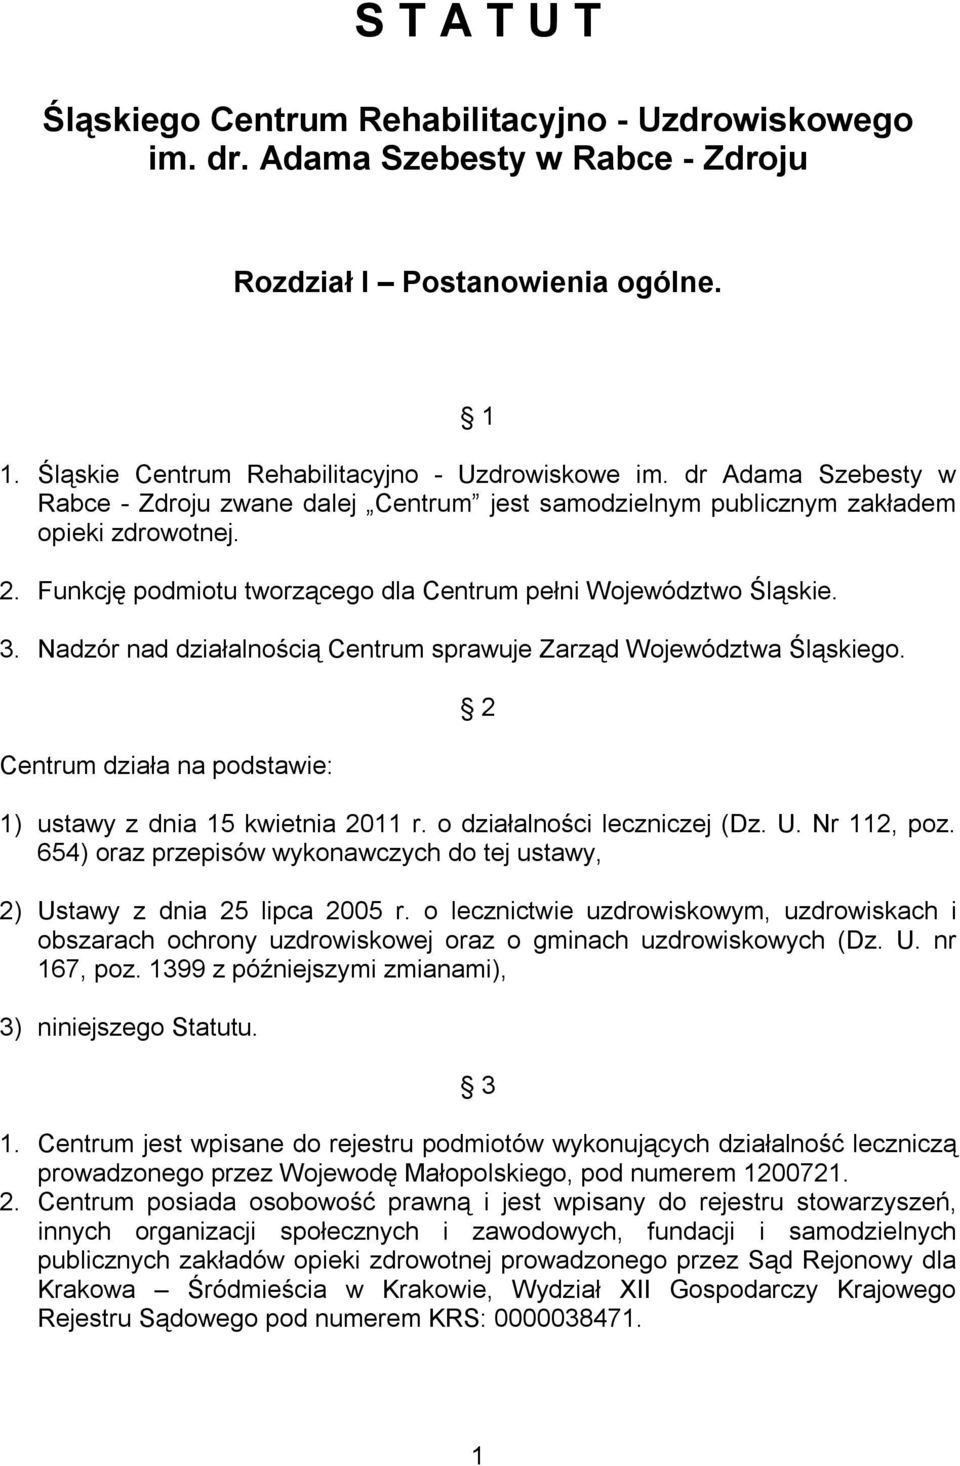 Nadzór nad działalnością Centrum sprawuje Zarząd Województwa Śląskiego. Centrum działa na podstawie: 2 1) ustawy z dnia 15 kwietnia 2011 r. o działalności leczniczej (Dz. U. Nr 112, poz.